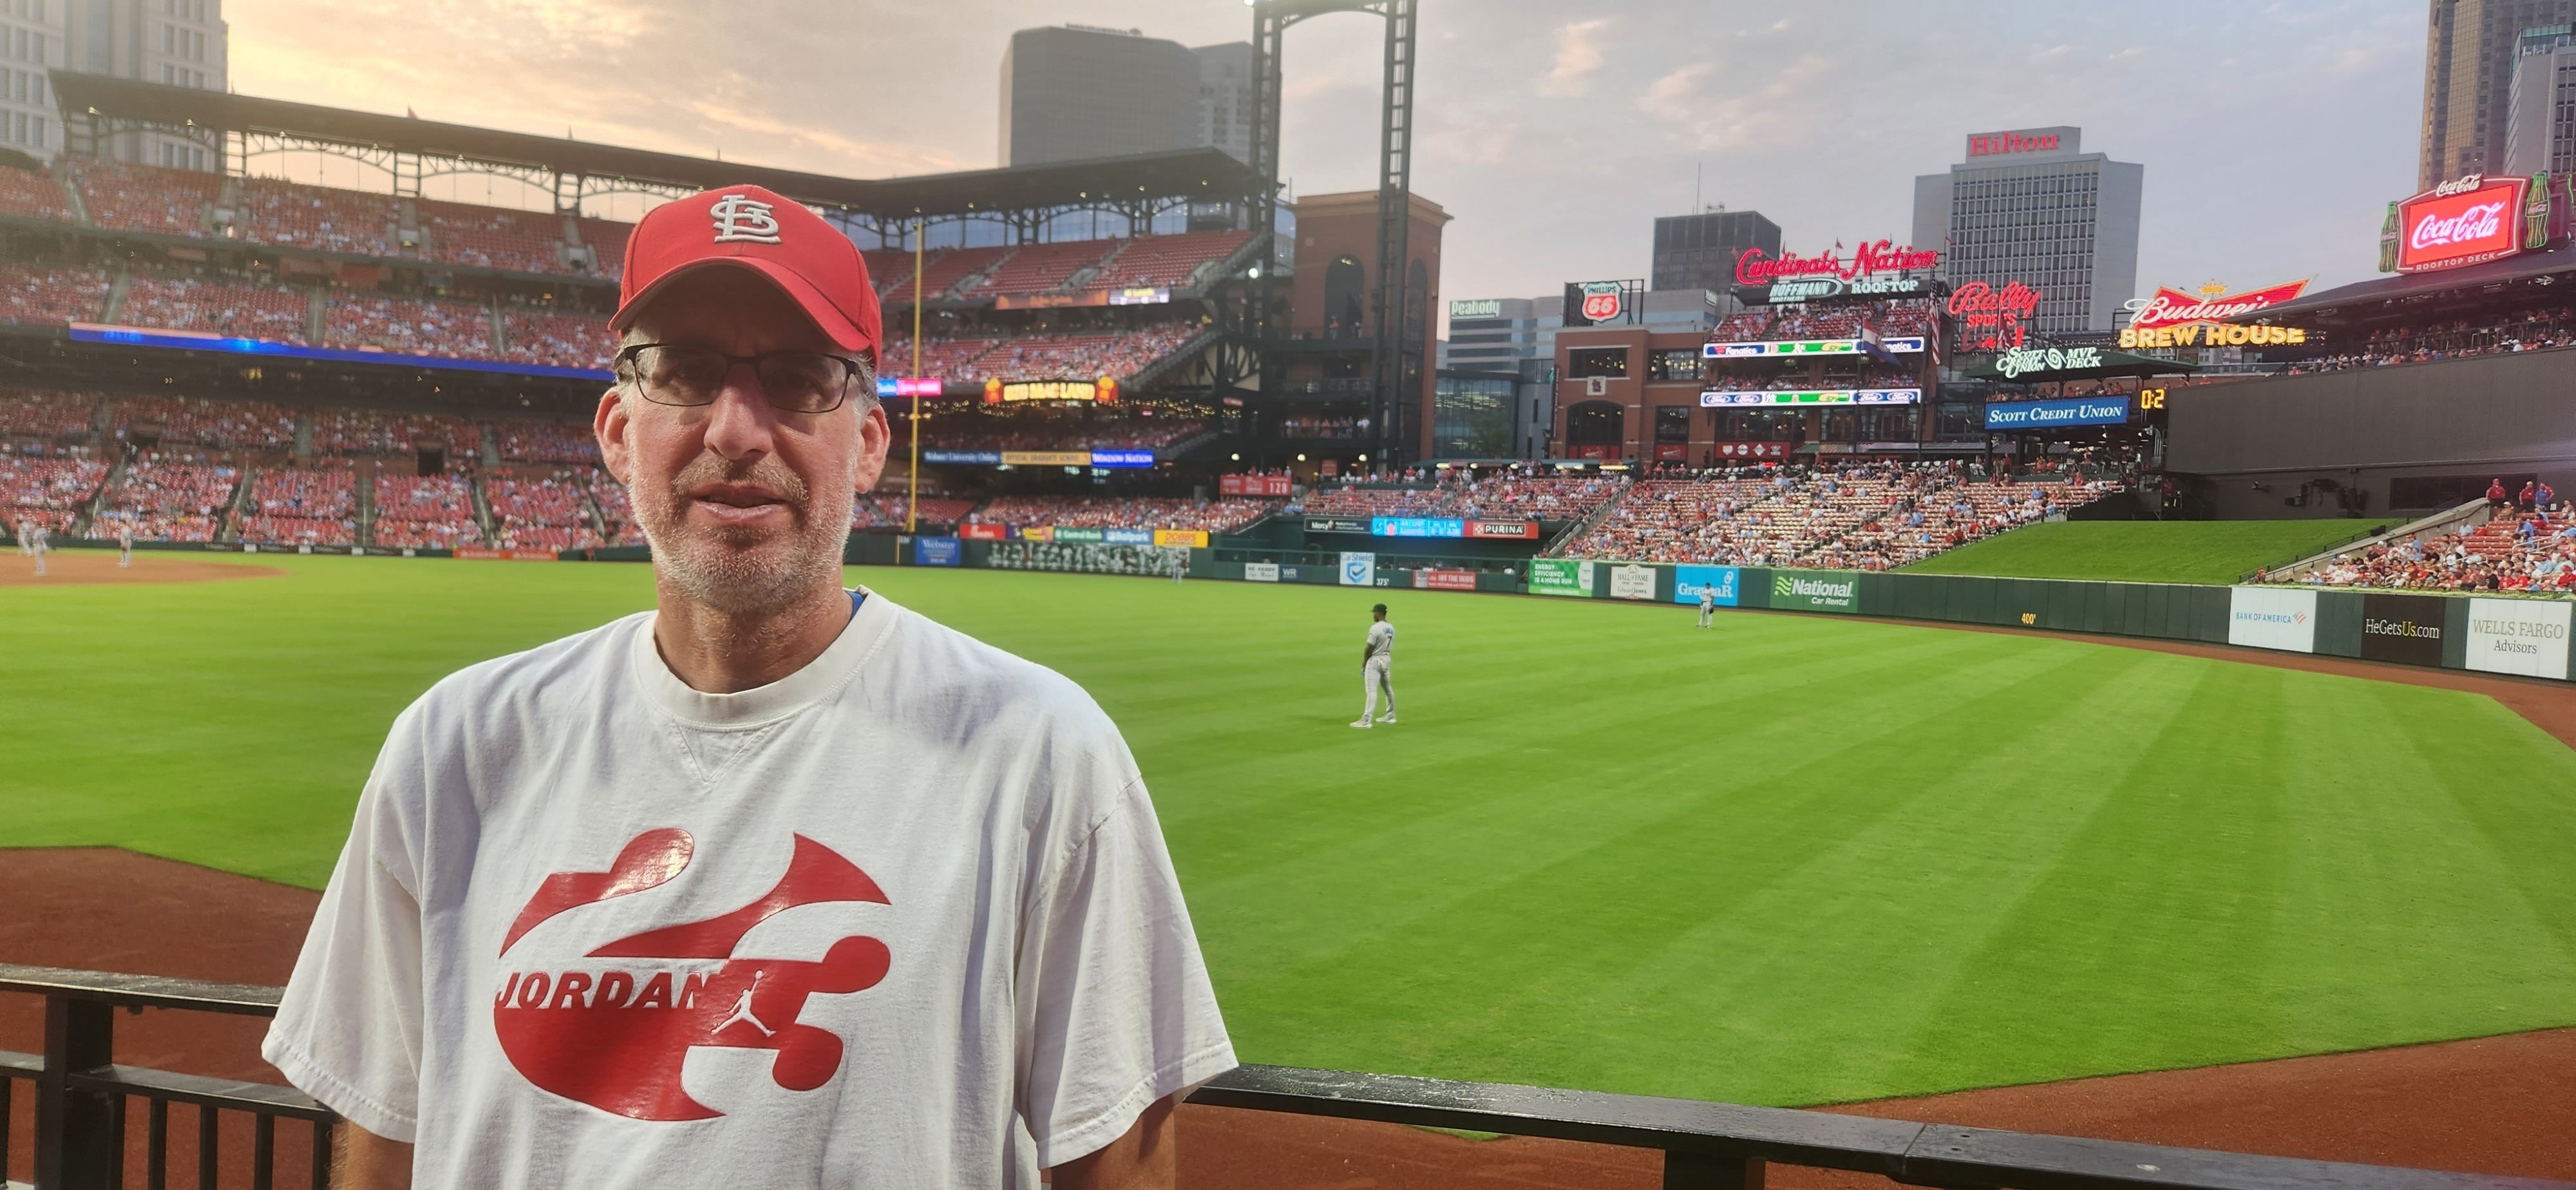 Men's Pleasures Green St. Louis Cardinals Ballpark T-Shirt Size: Small